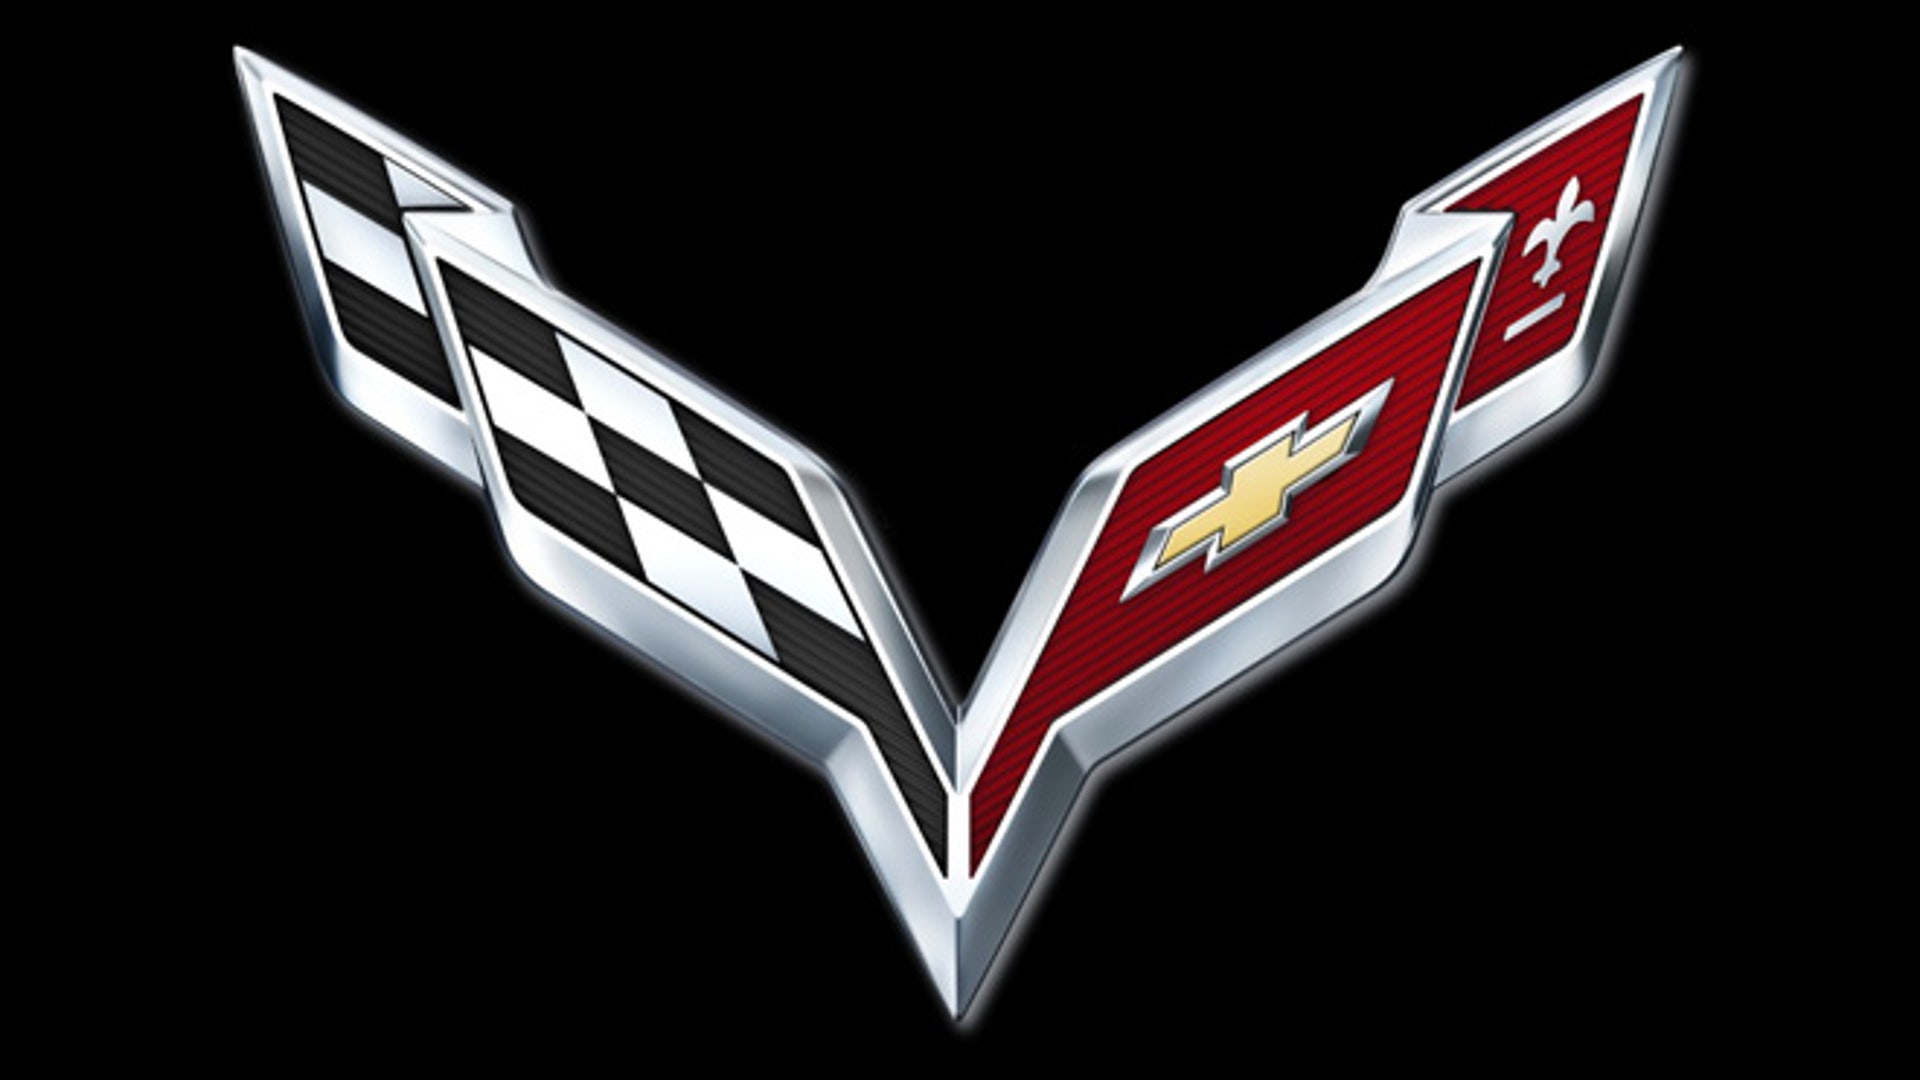 2005 Corvette Crossed Flag Logo